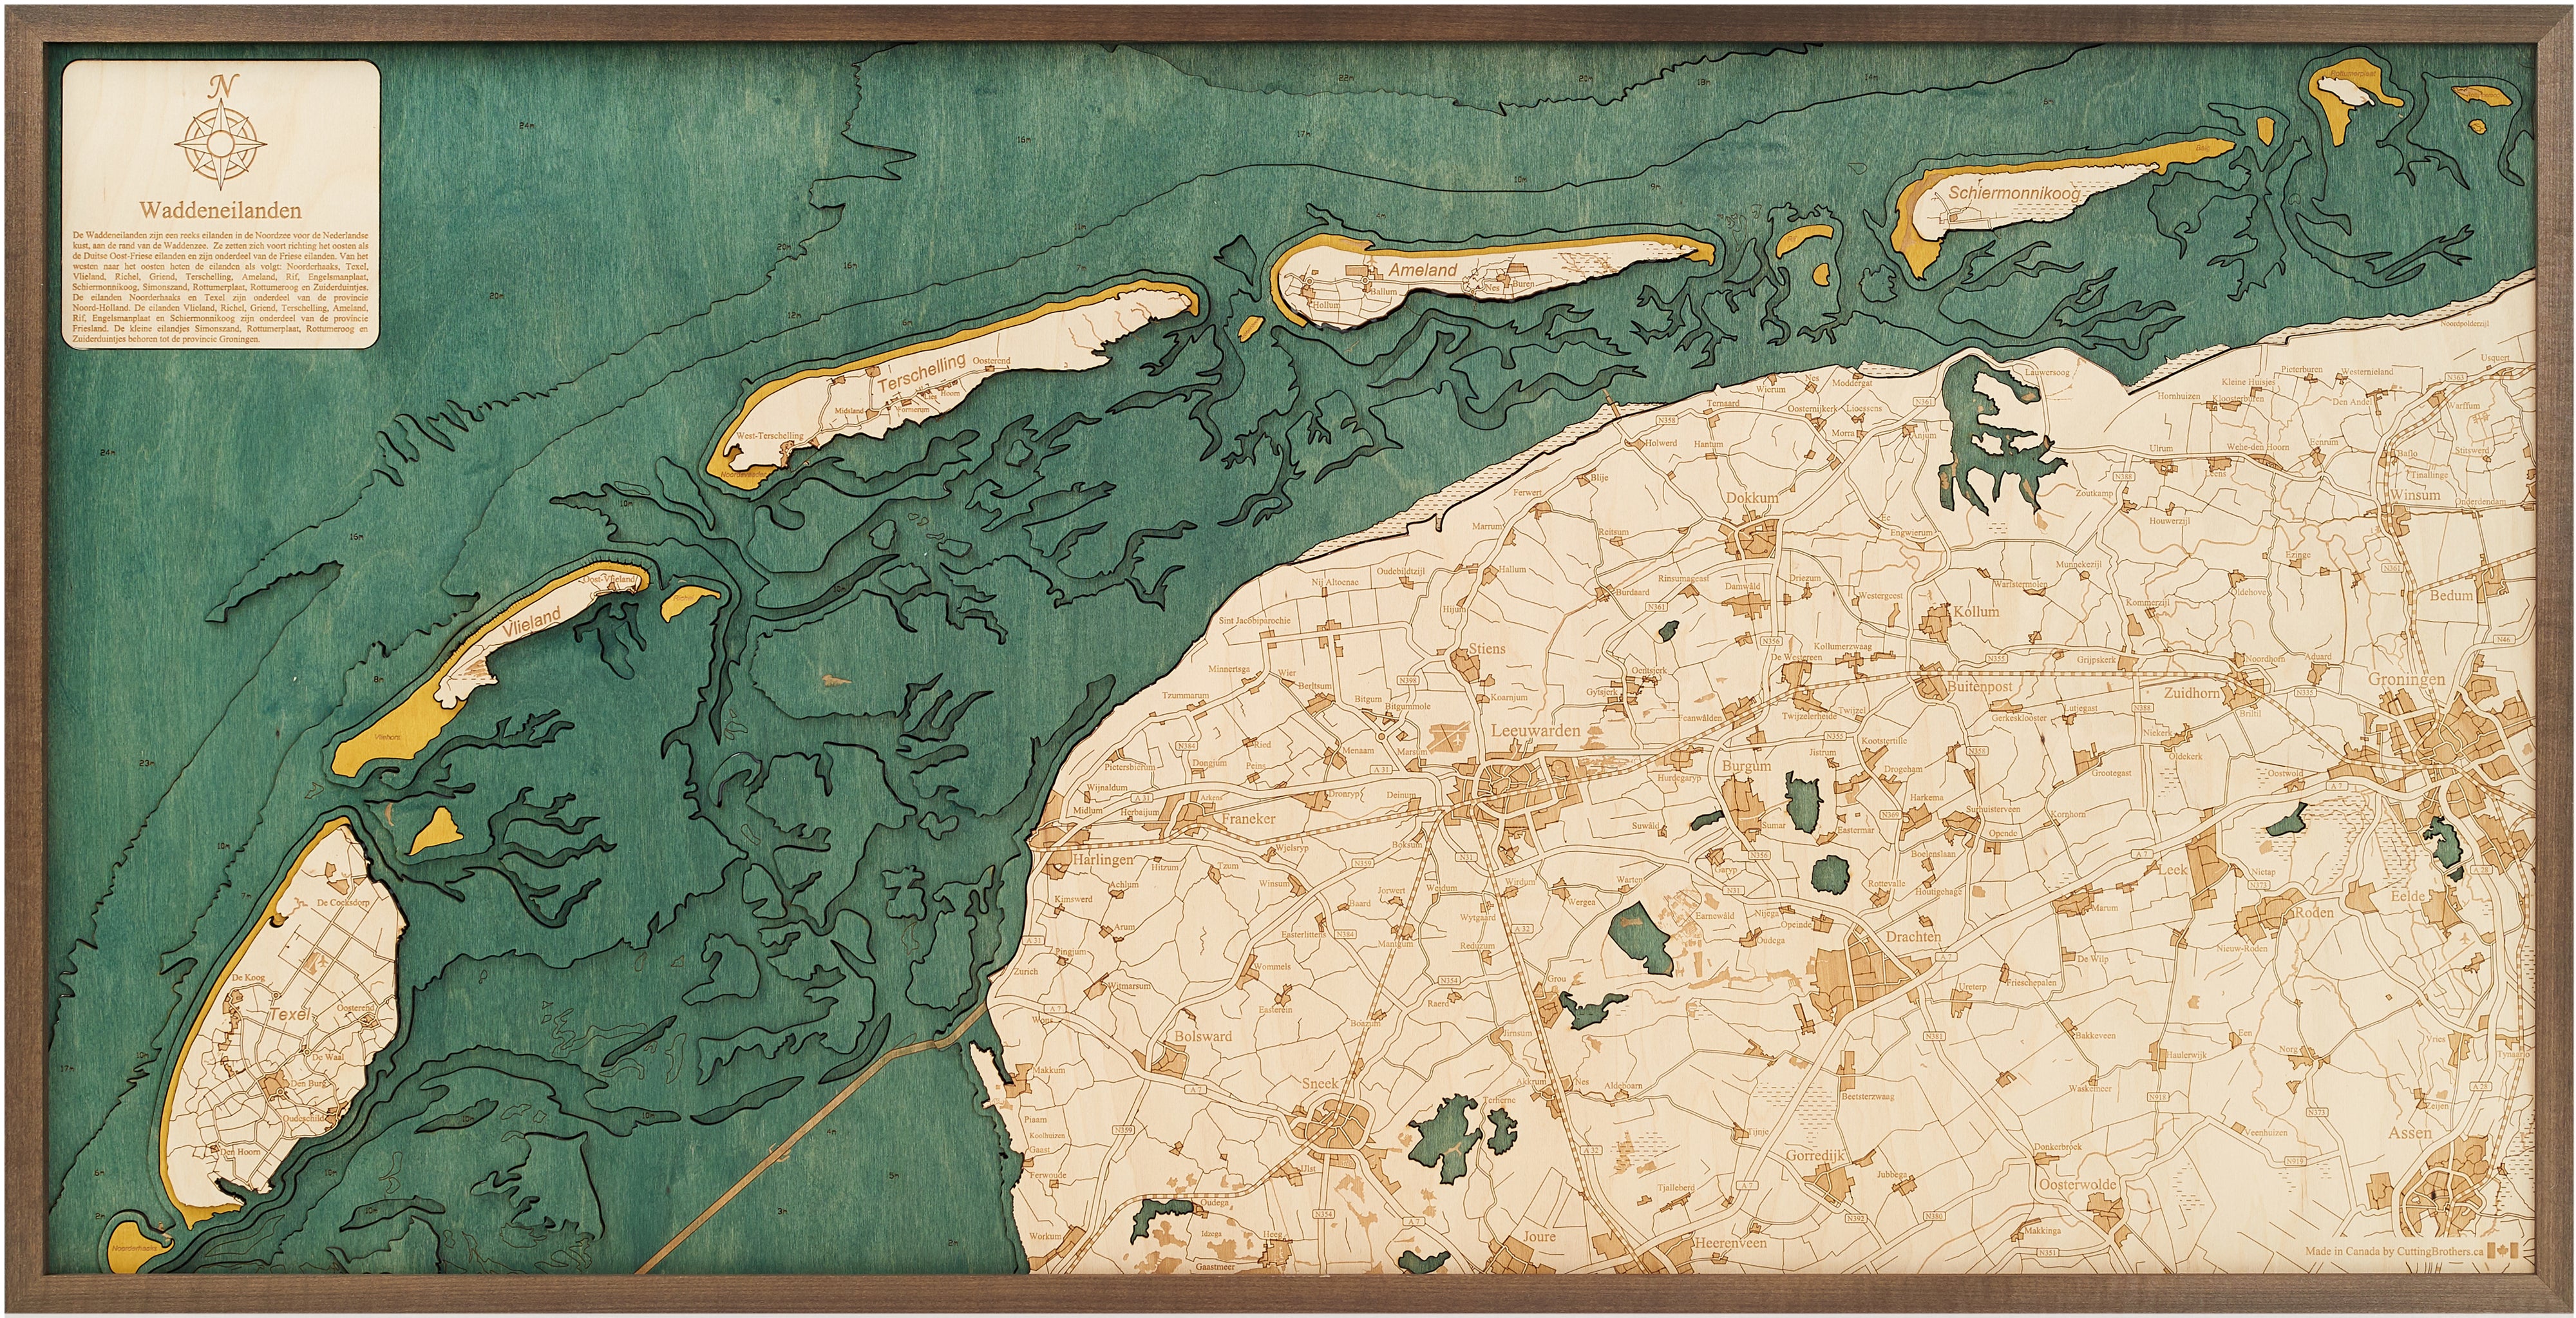 WADDENEILANDEN FRISIAN ISLANDS 3D wooden wall map - version XL 